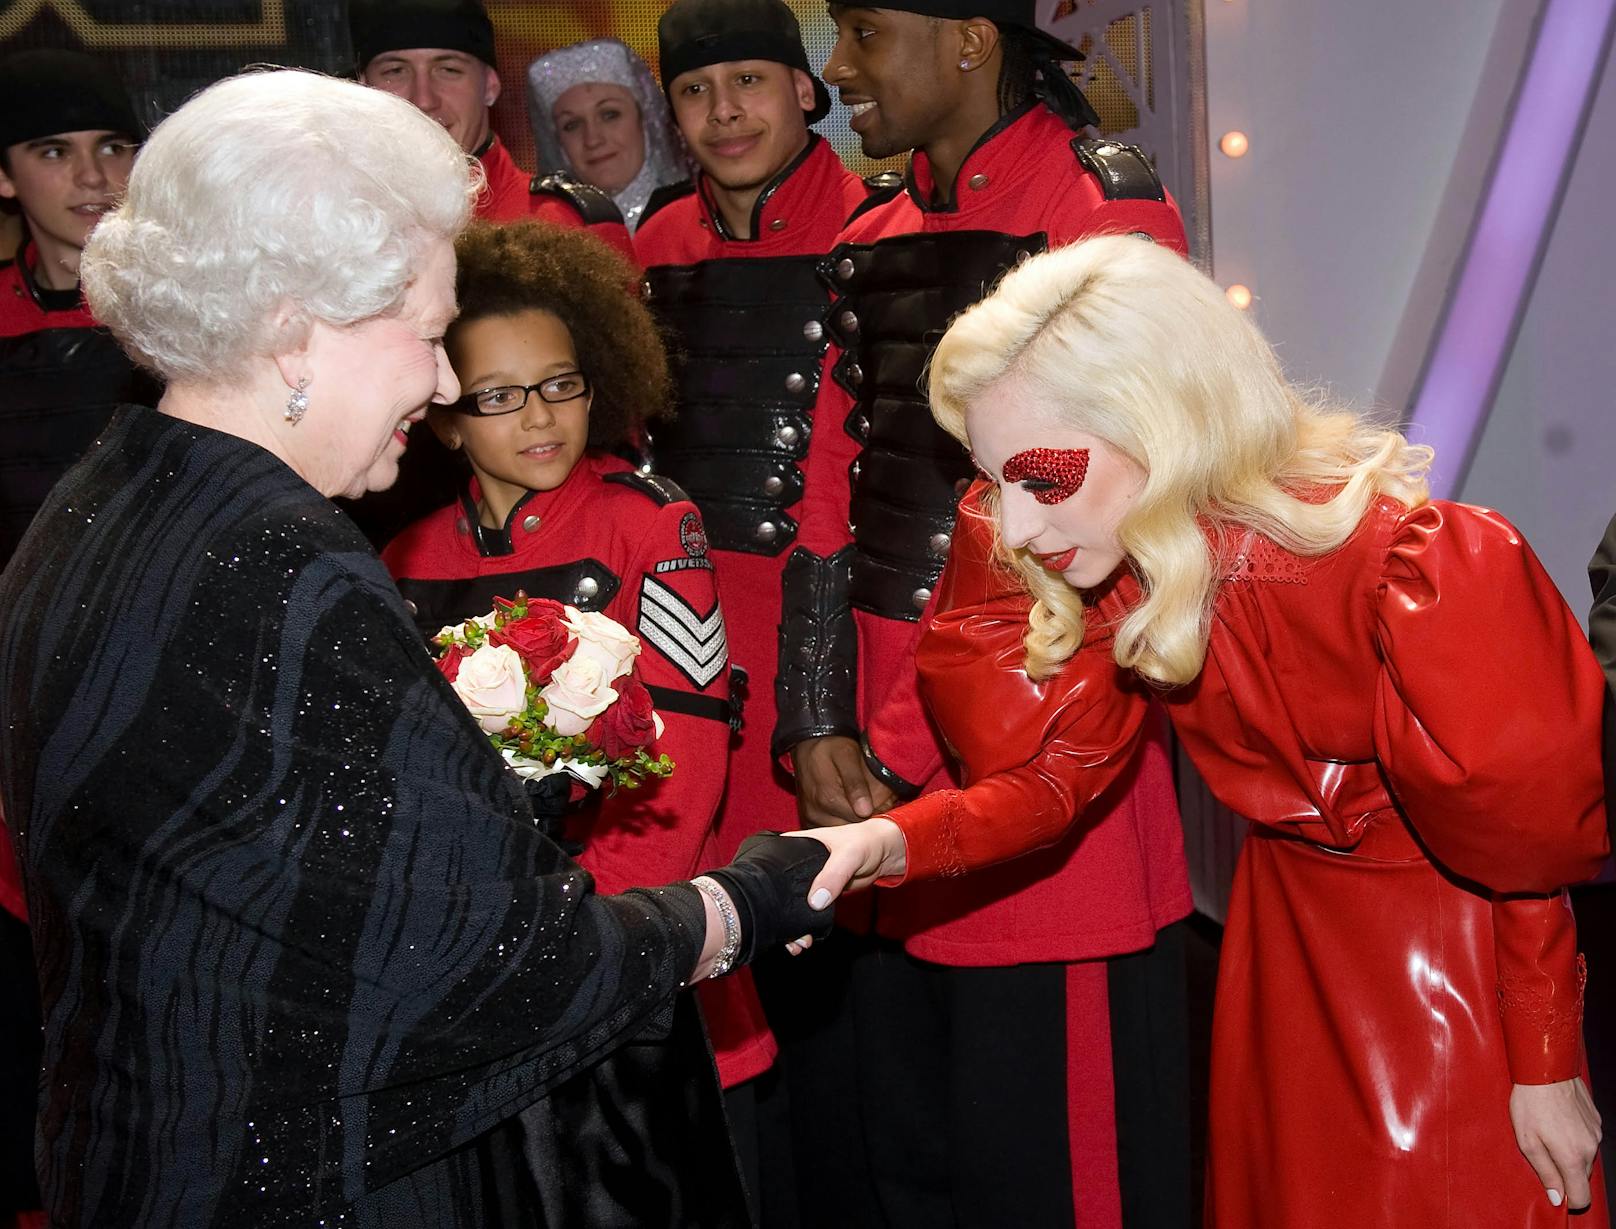 Wenig dezent ging es auch beim Treffen von <strong>Queen Elizabeth II.</strong> und <strong>Lady Gaga</strong> zu. Anstatt bei ihrem Outfit auf zurückhaltende Farben zu achten, präsentierte sich die Pop-Ikone der britischen Monarchin in Knallrot.